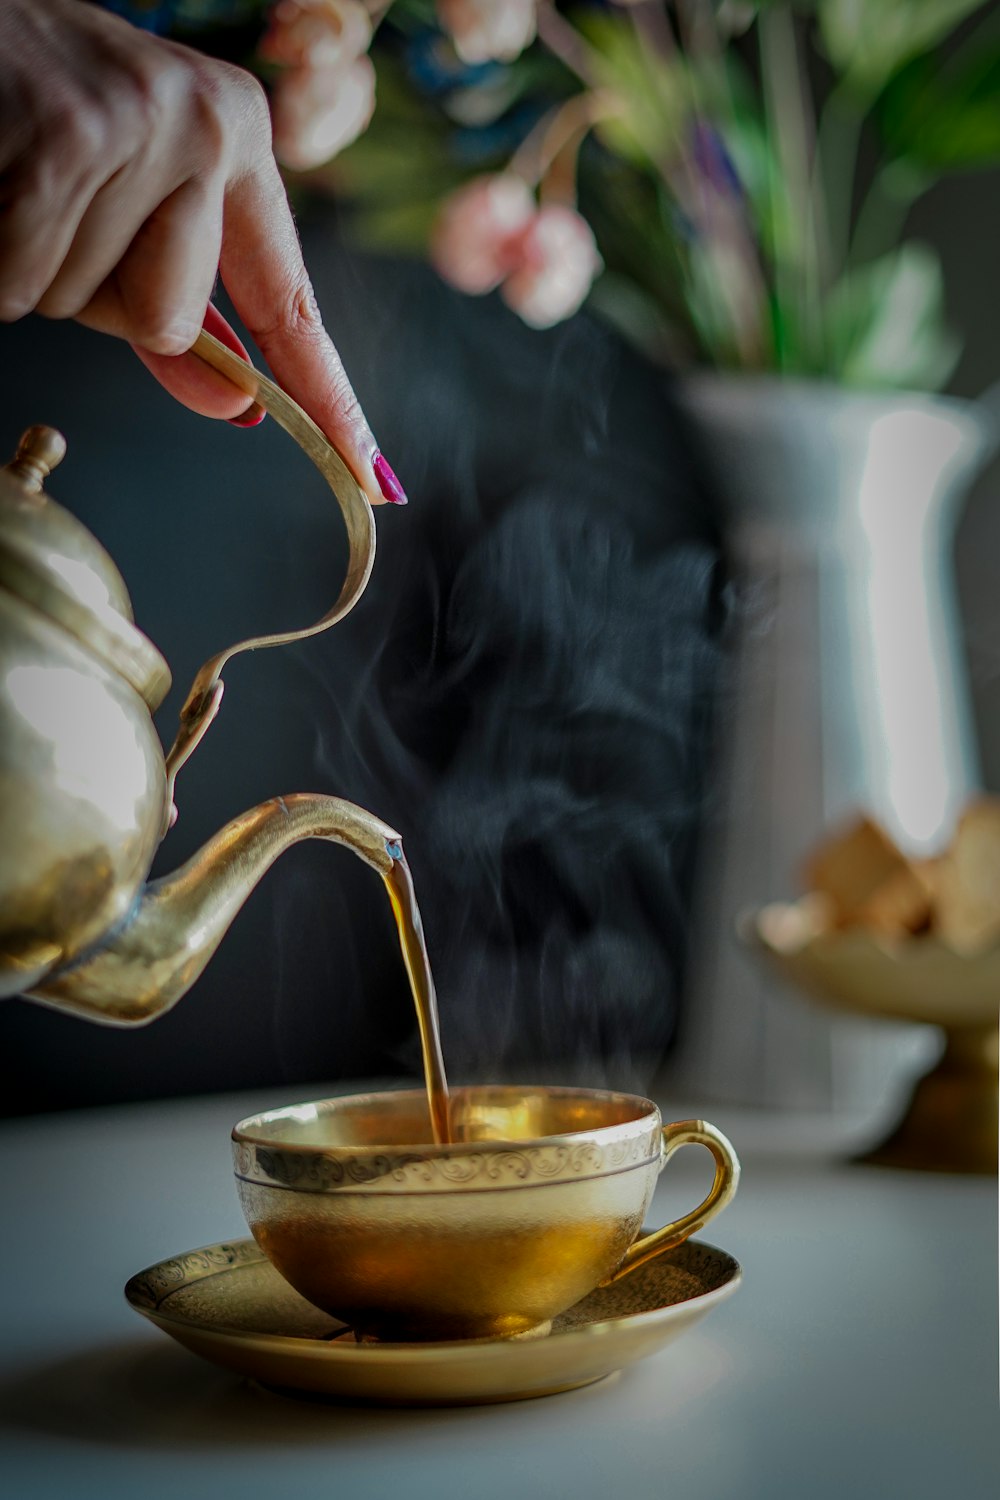 personne versant du thé sur une théière en céramique blanche